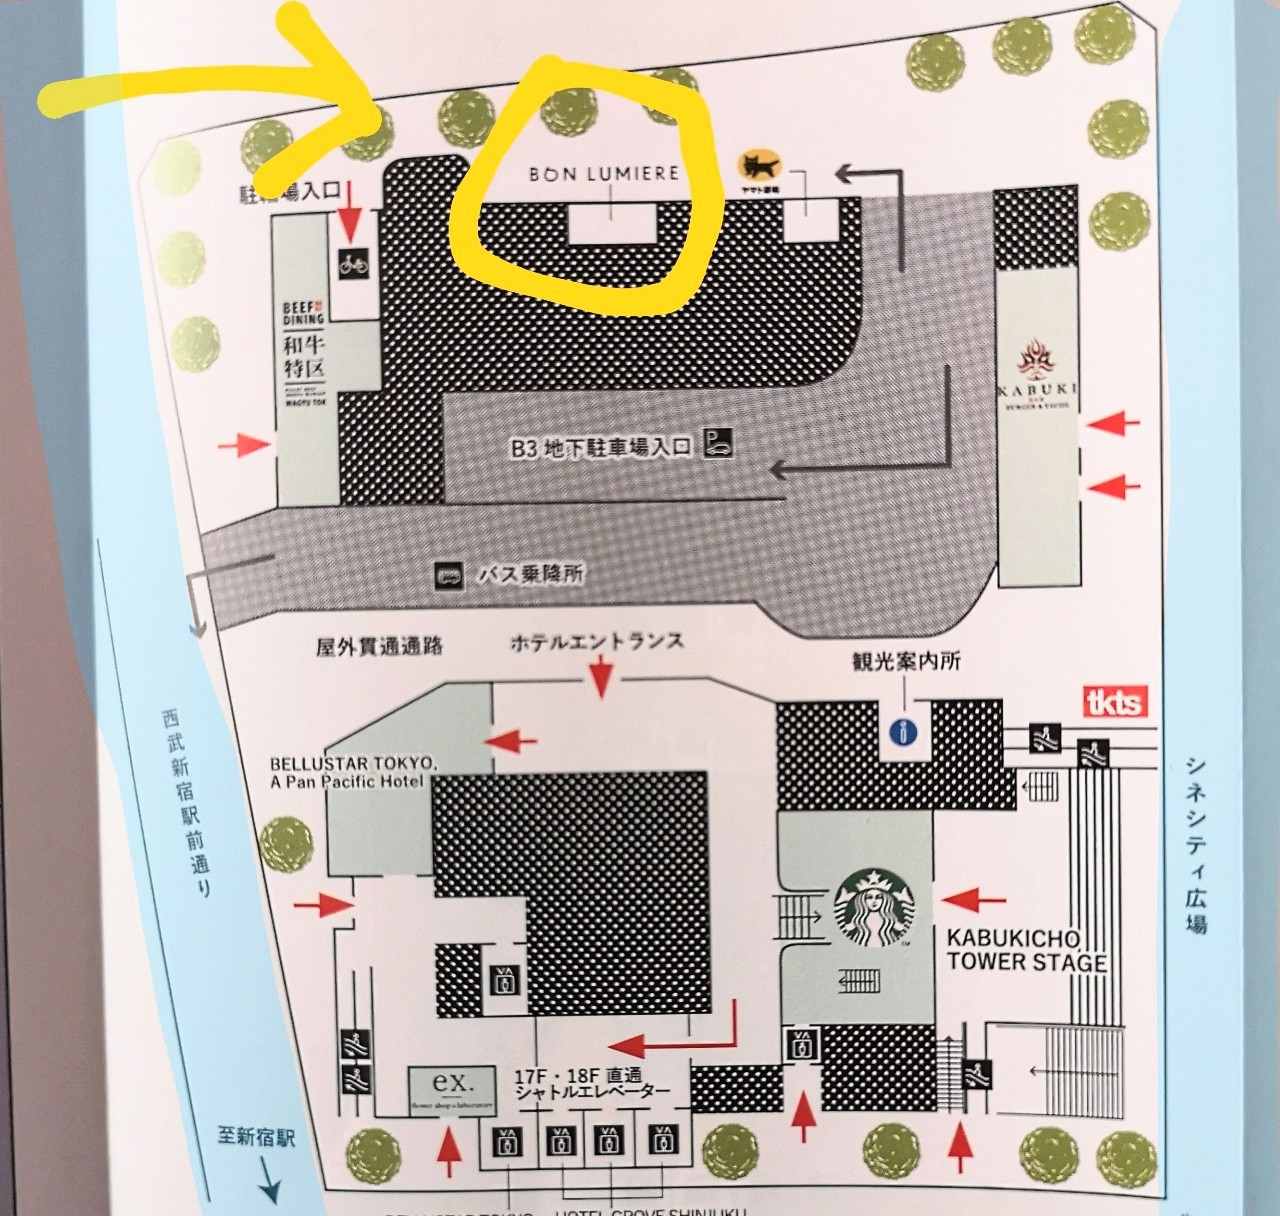 東京都新宿区・「BON LUMIERE」の地図（東急歌舞伎町タワーのパンフレット）